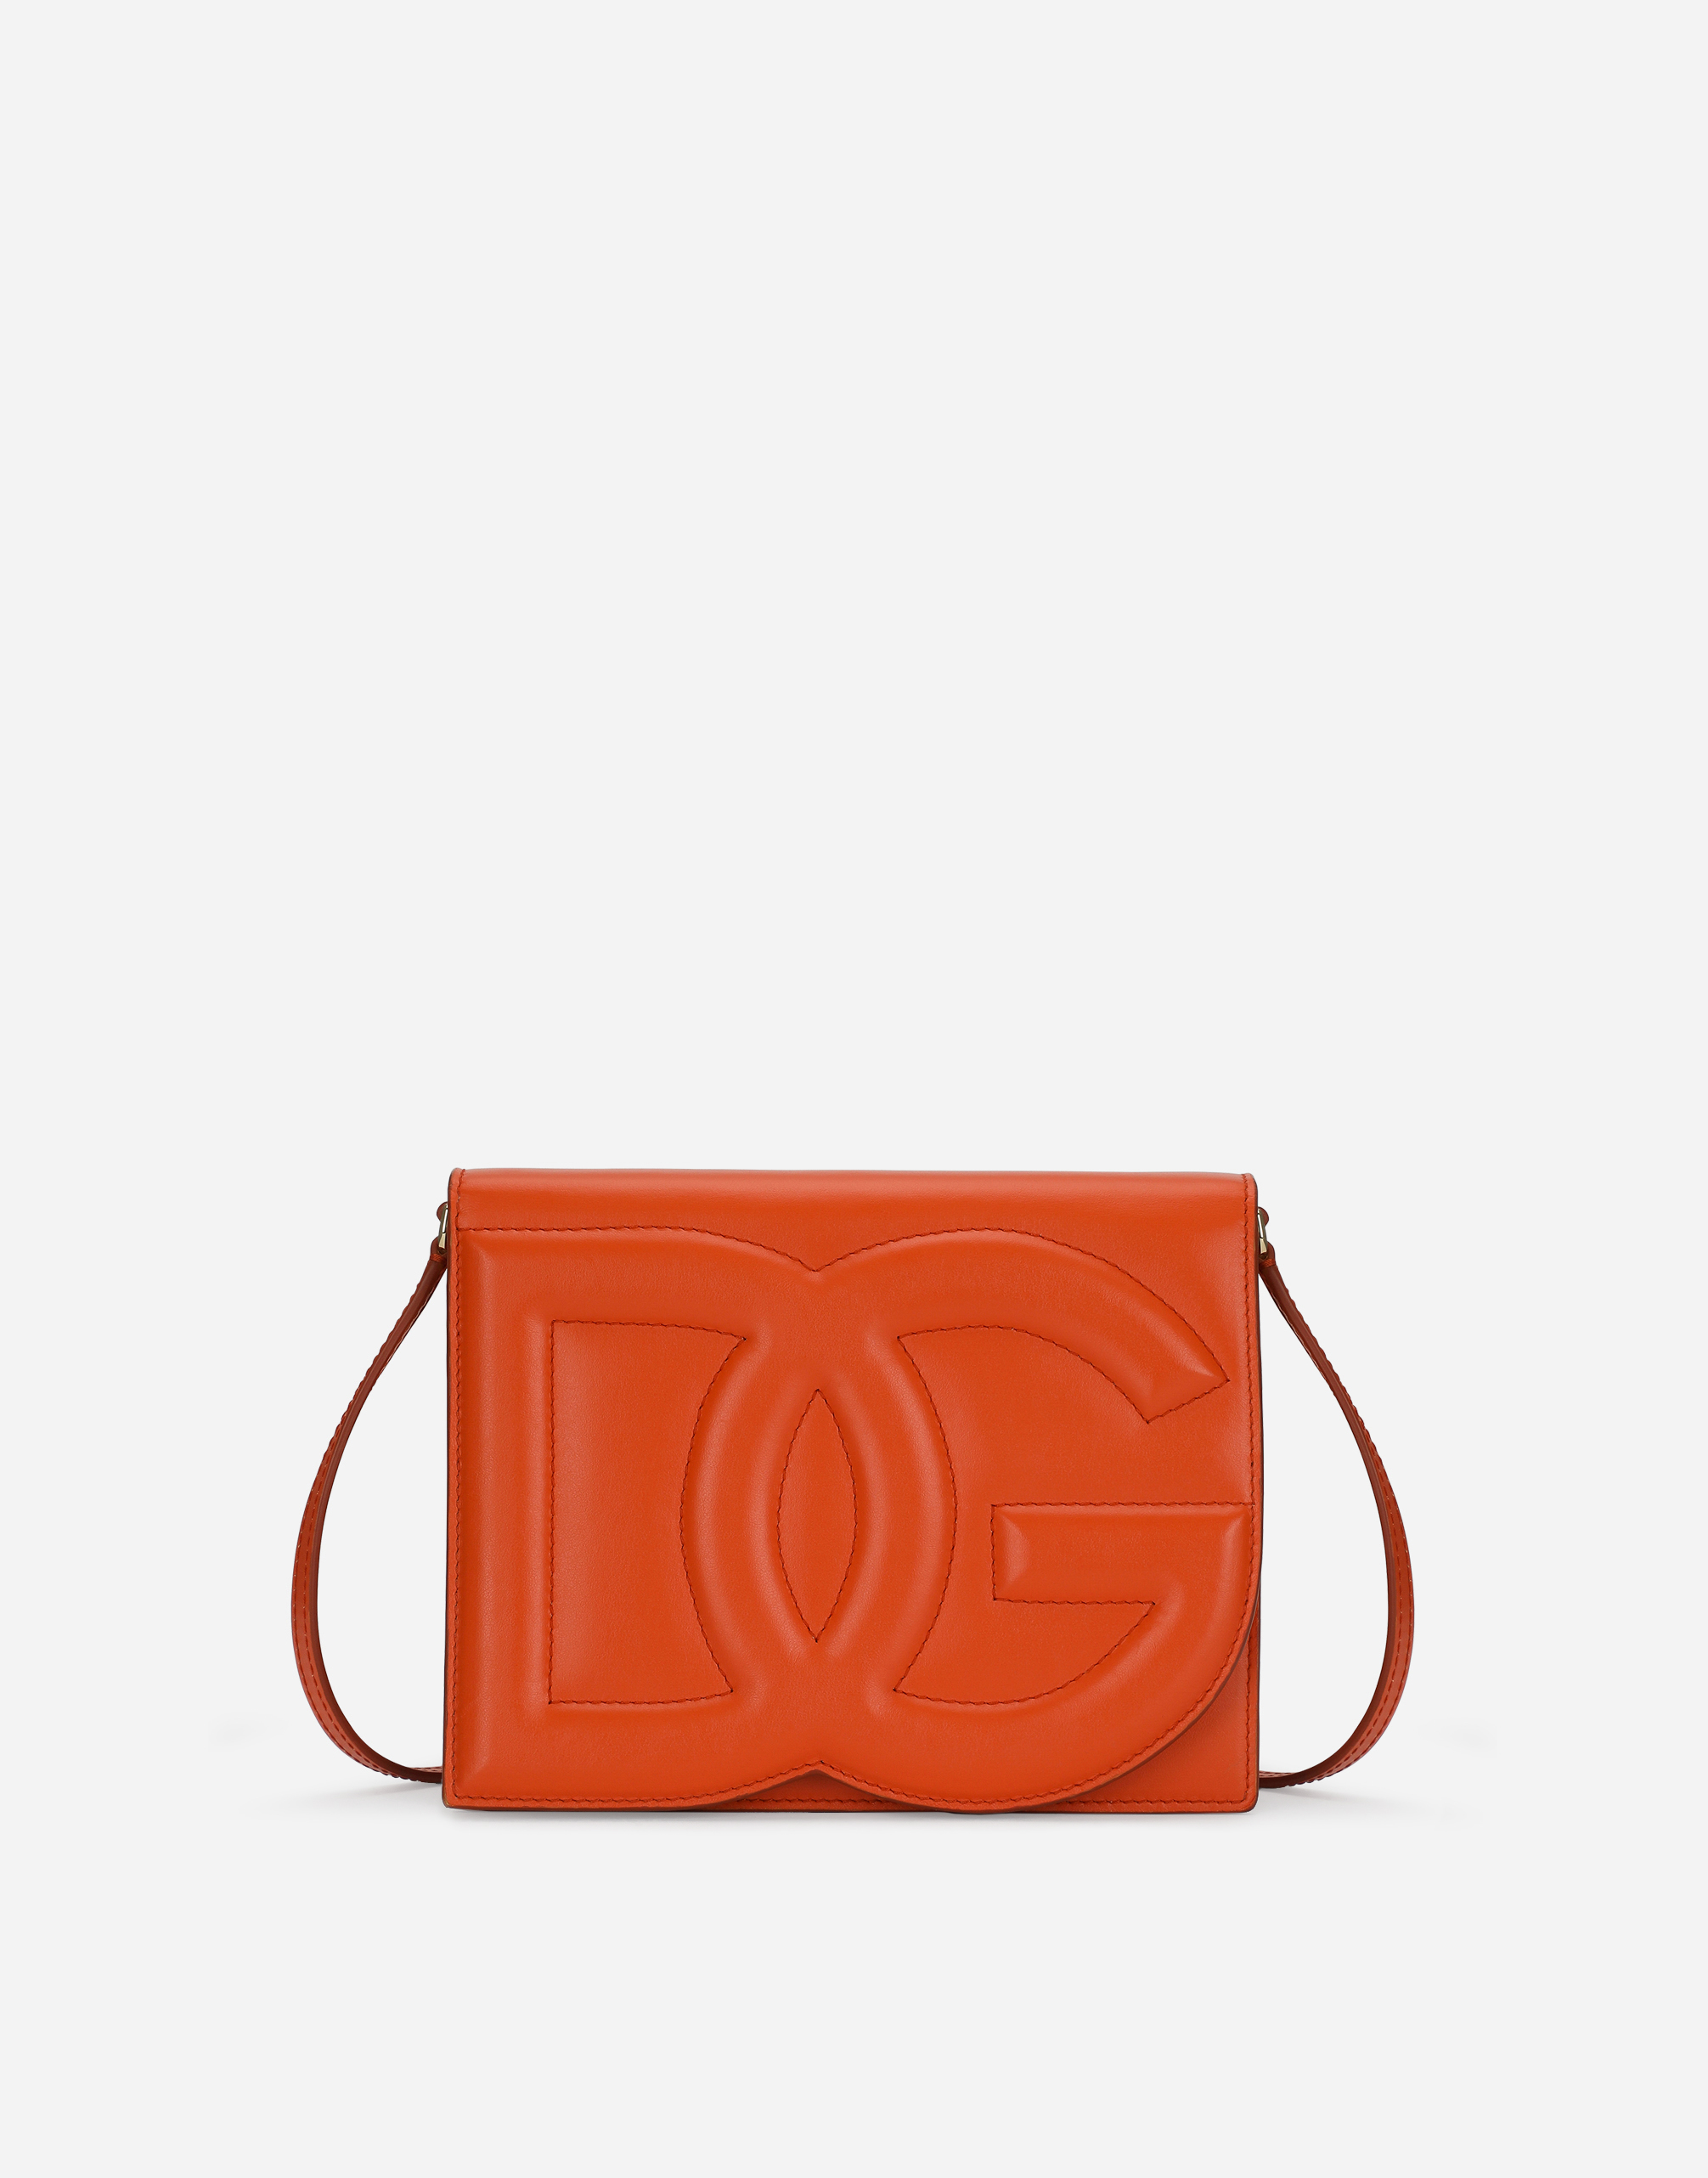 Dolce & Gabbana Calfskin Crossbody Bag With Logo In Orange